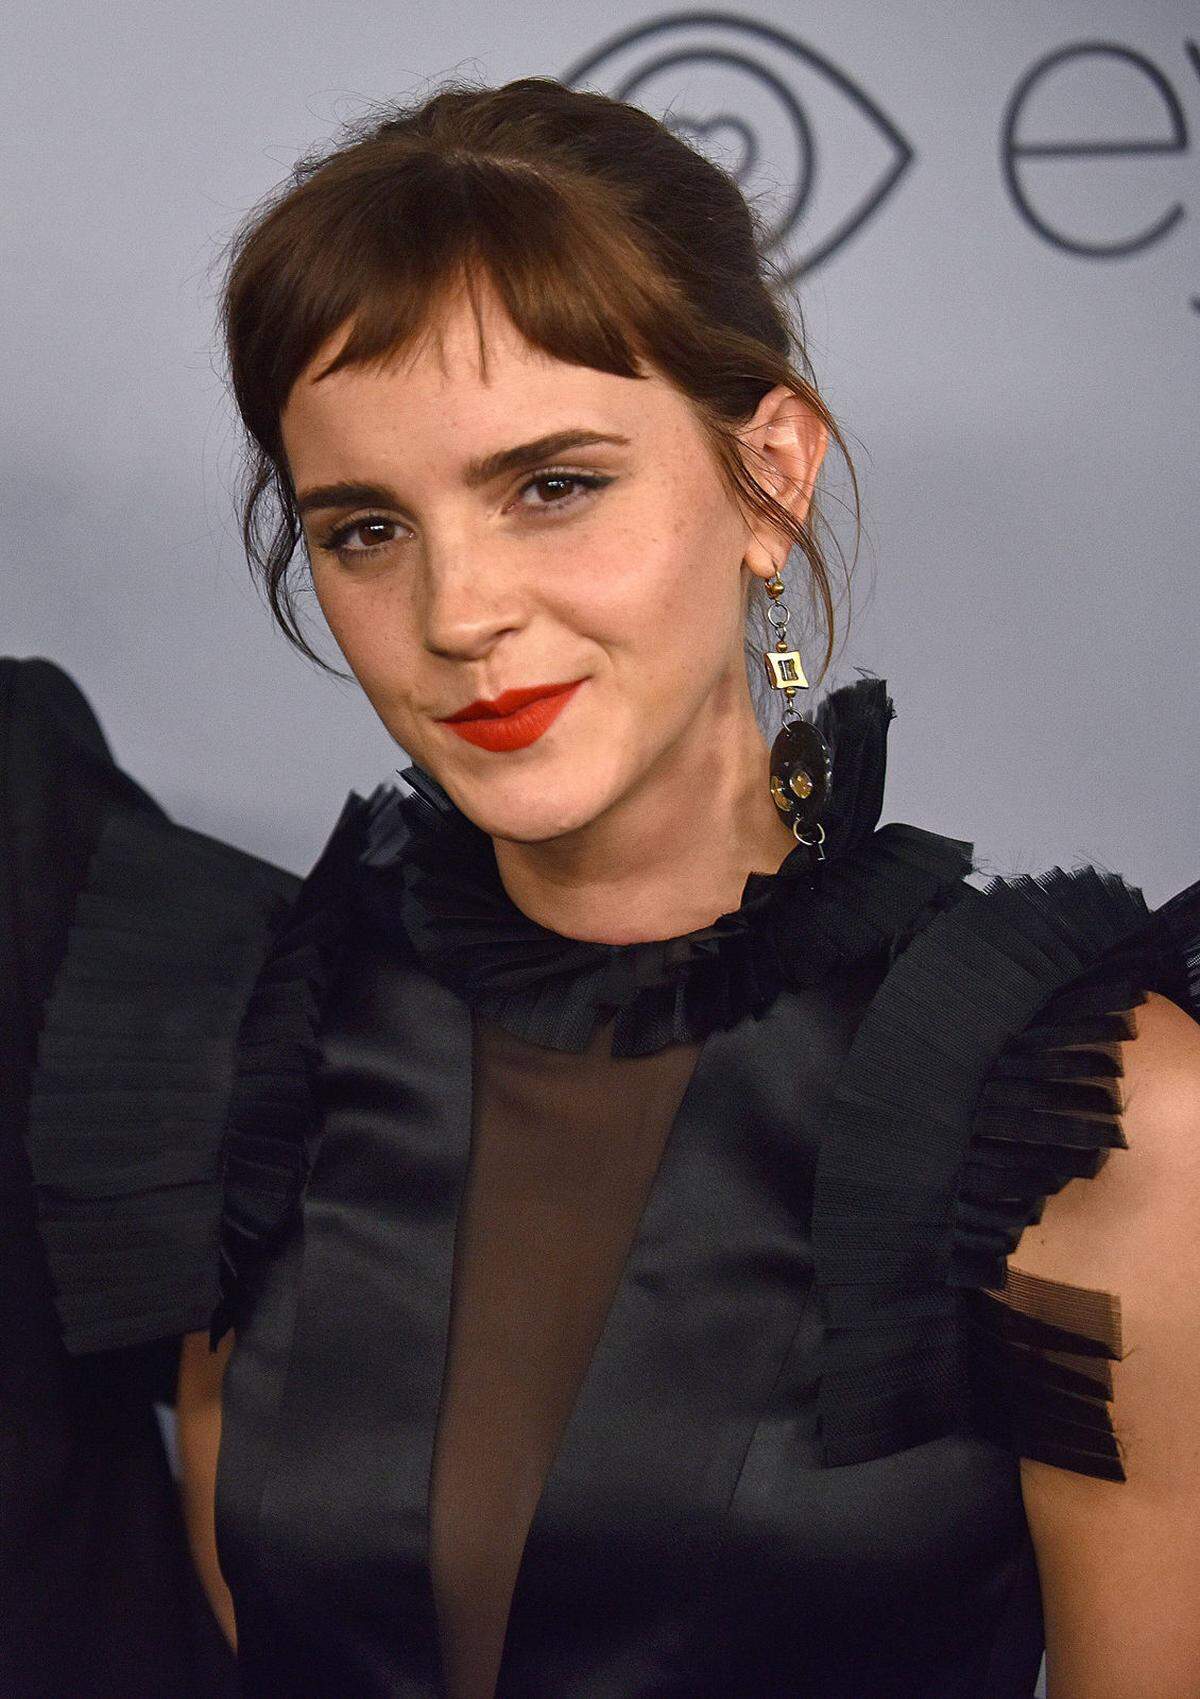 Neues Jahr, neue Frisur. Das dachte sich wohl auch Emma Watson (27), die bei den Golden Globes ihre neue Frisur präsentierte. Sie trägt jetzt Stirnfransen.